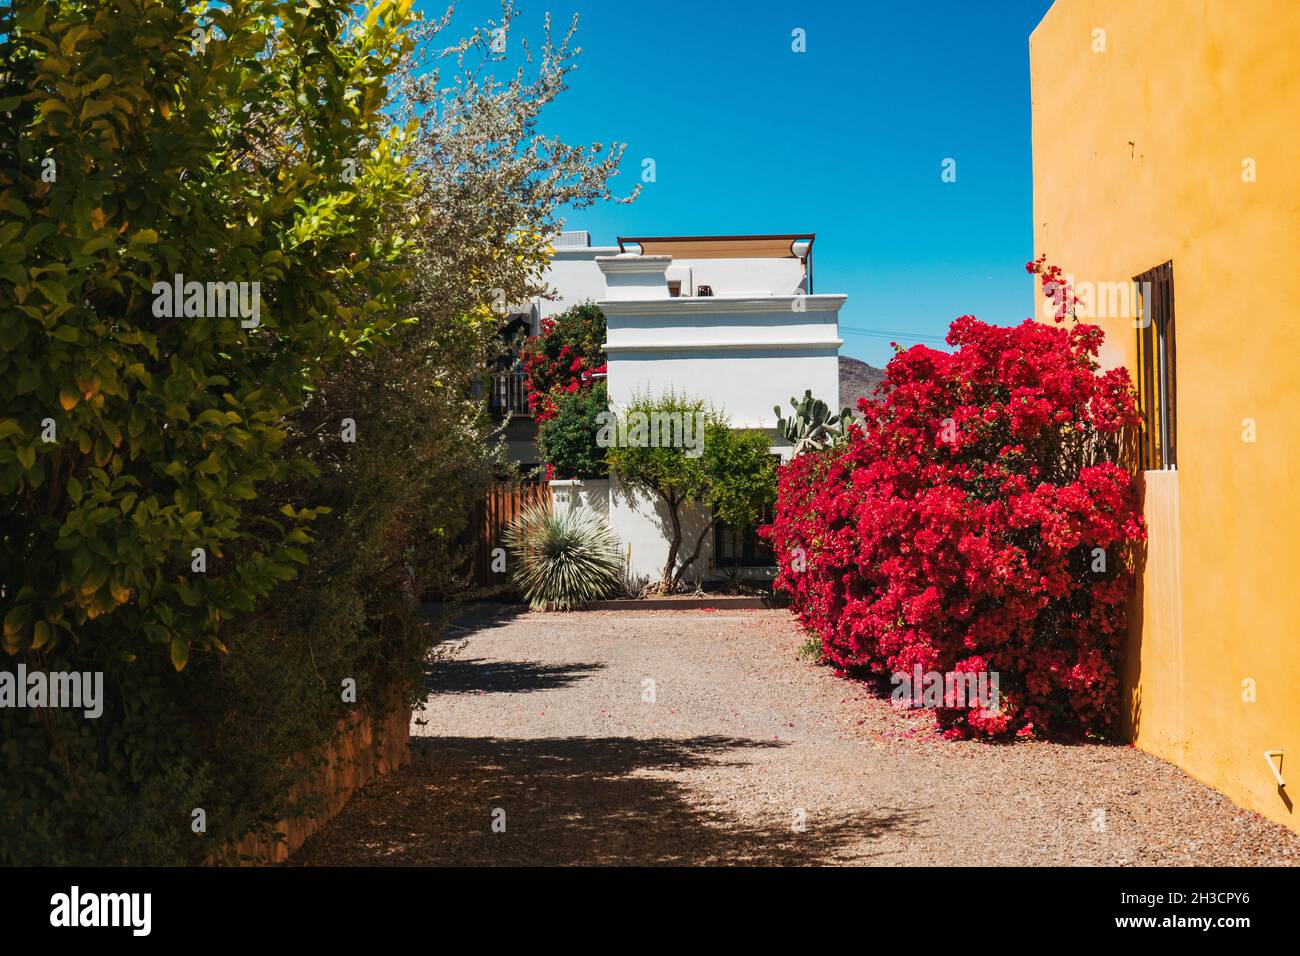 Des fleurs roses vibrantes sont à l'entrée d'une maison en adobe à Barrio Viejo, Tucson, Arizona Banque D'Images